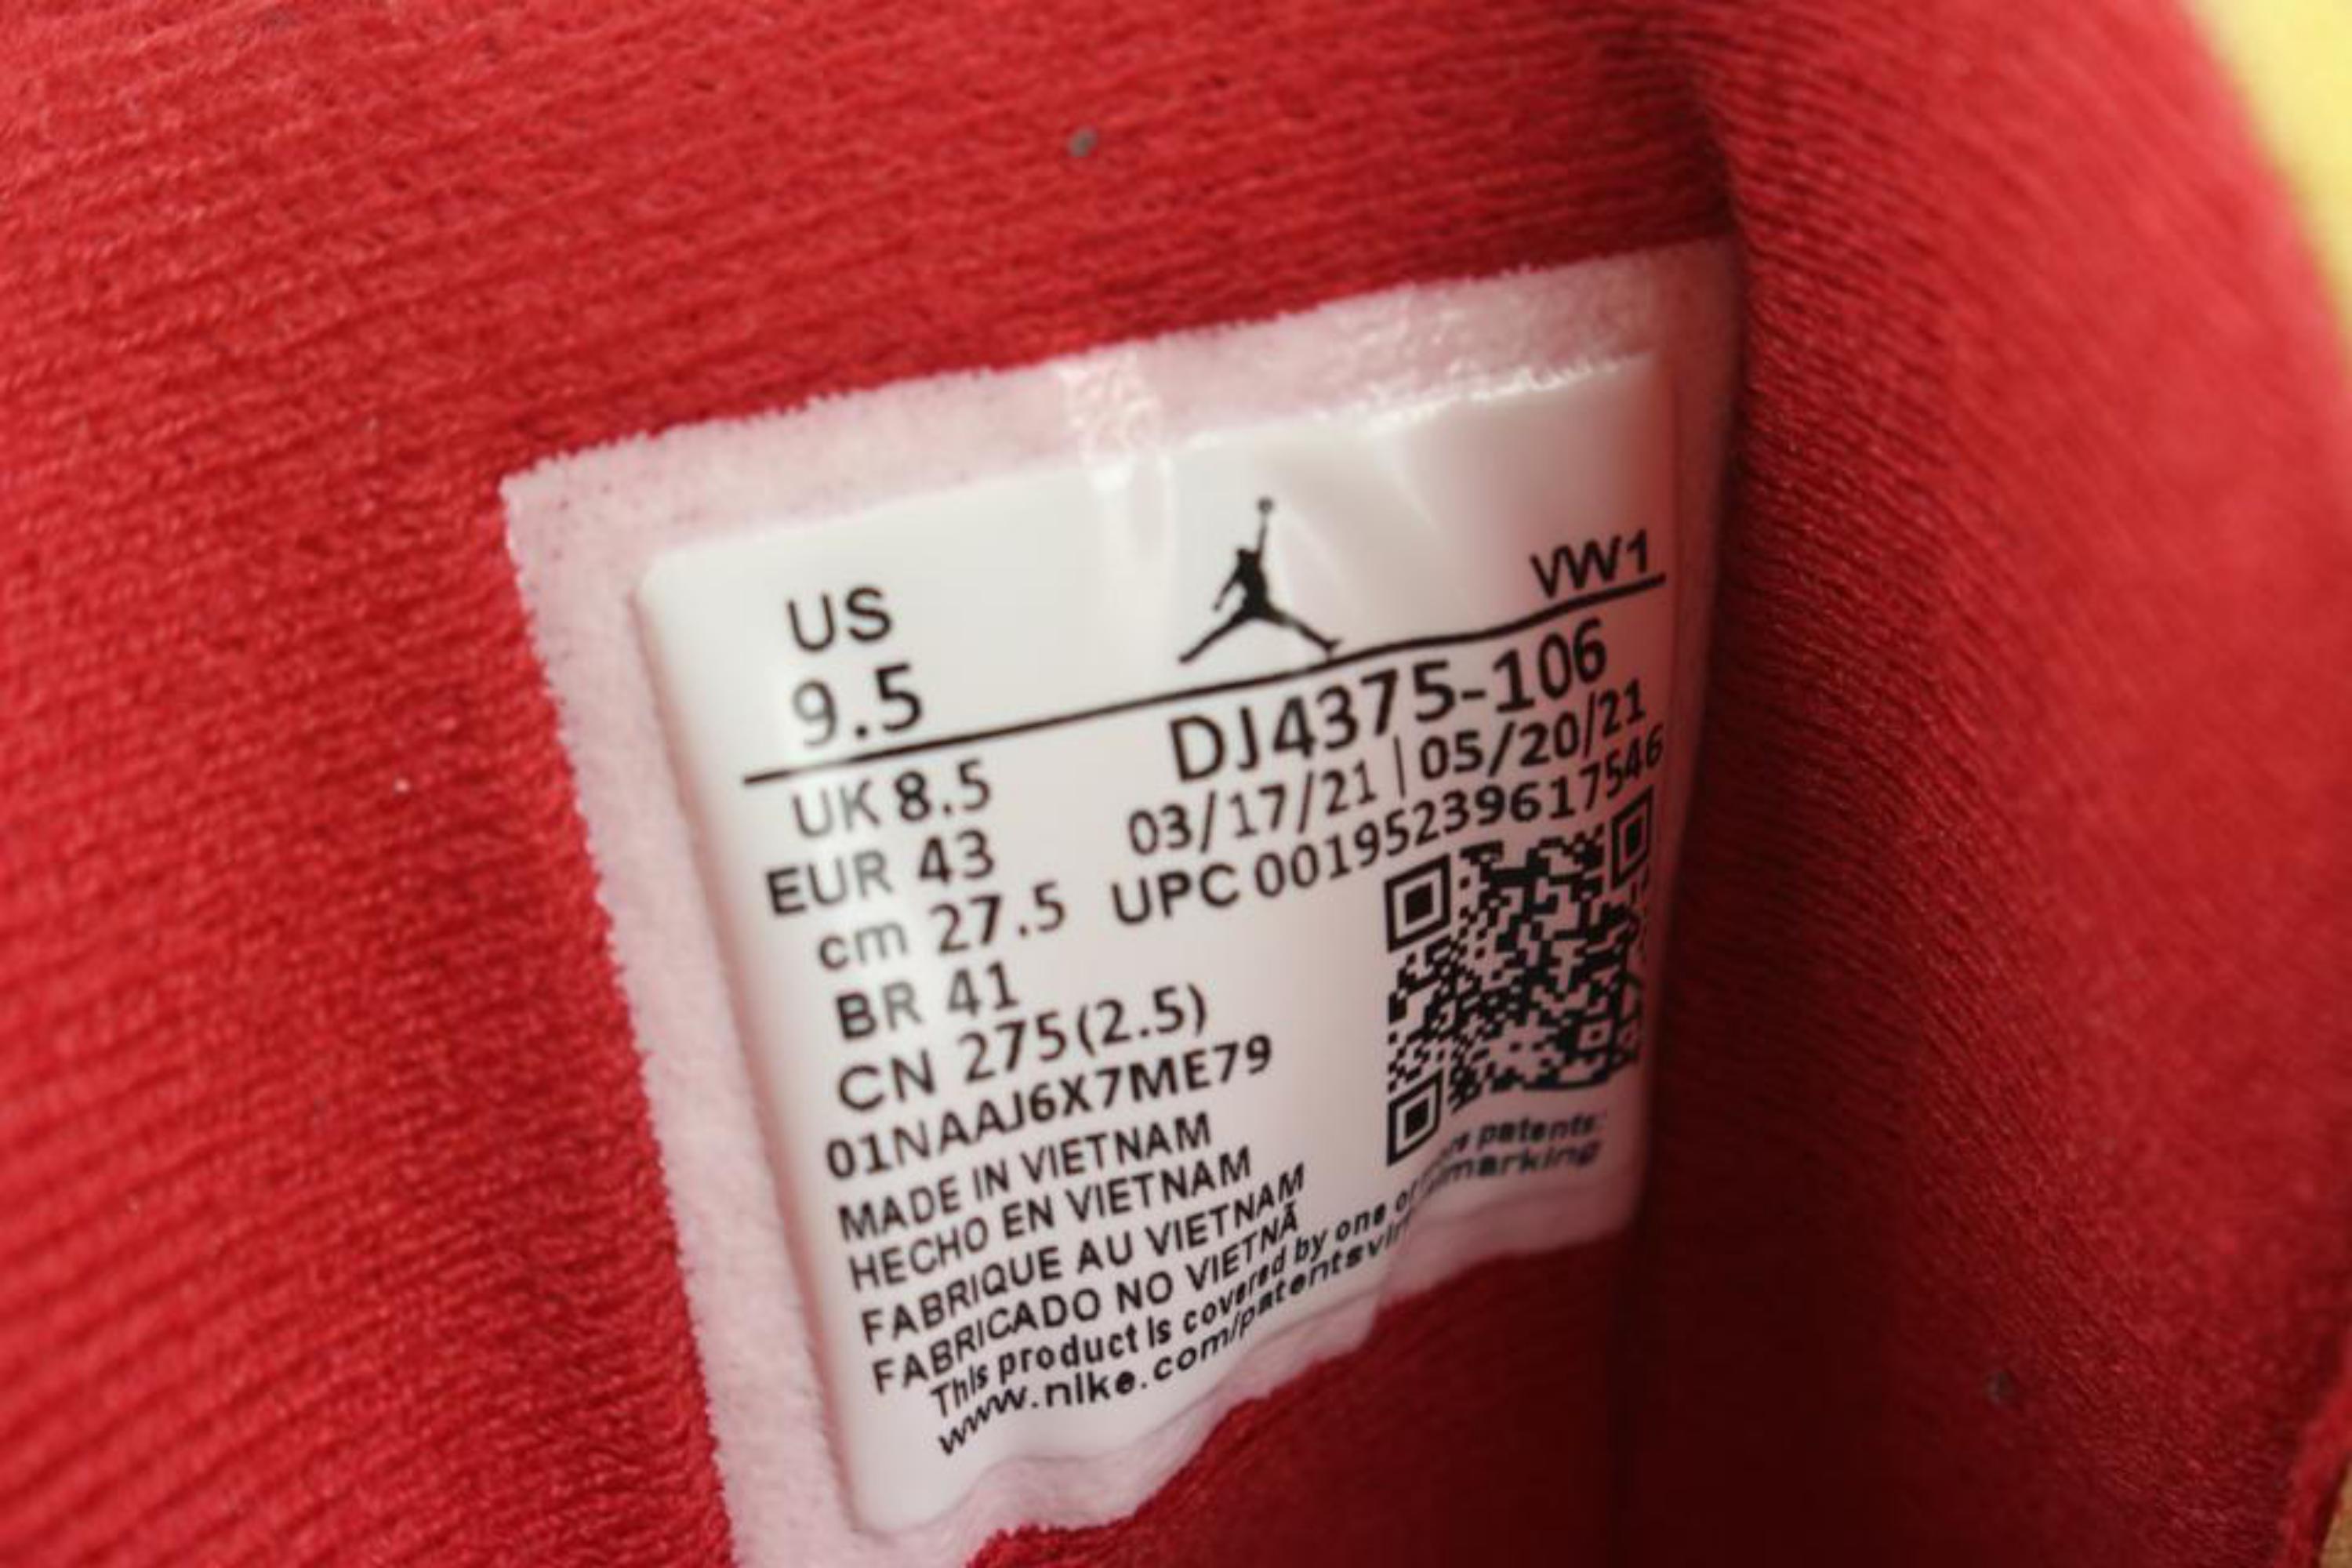 Off-White x Nike Hommes 9.5 US Virgil Abloh Off-White RougeAir Jordan 2 II Low dj4375-106
Code de date/Numéro de série : DJ4375-106
Fabriqué en : Vietnam
Mesures : Longueur :  11.75